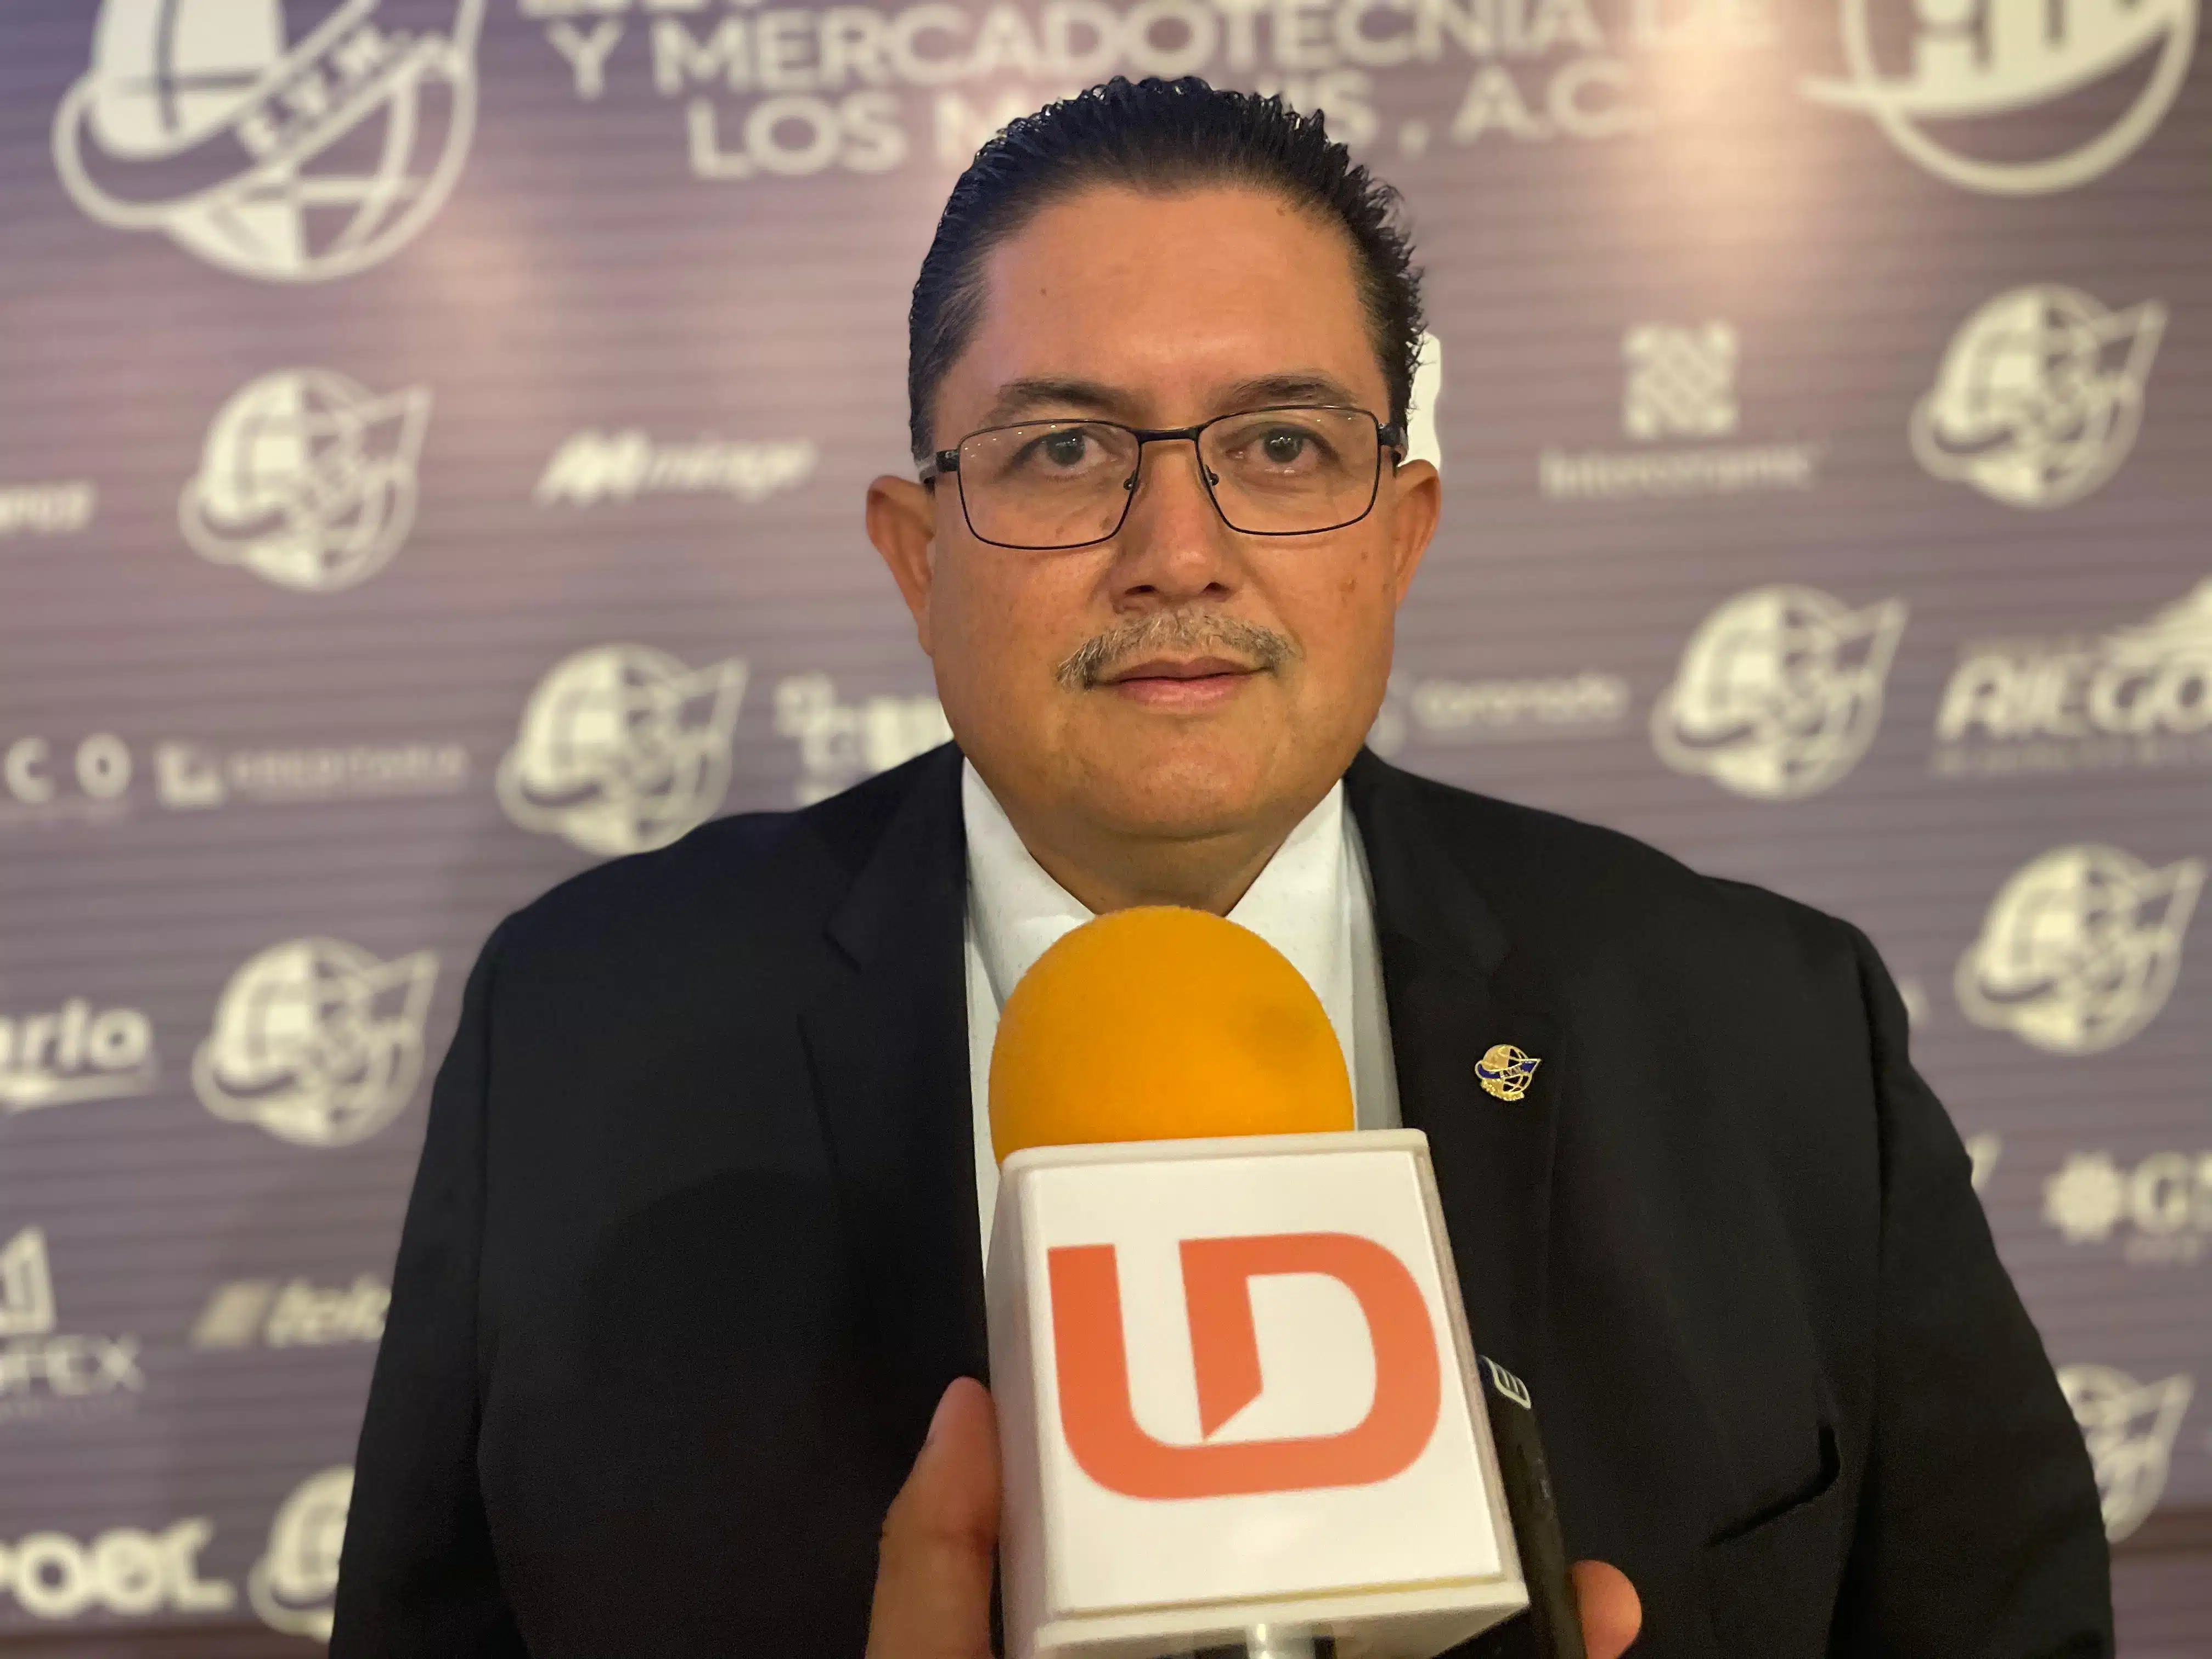 José Eleazar Iribe León, nuevo presidente de Ejecutivos de Ventas y Mercadotecnia Los Mochis A.C.